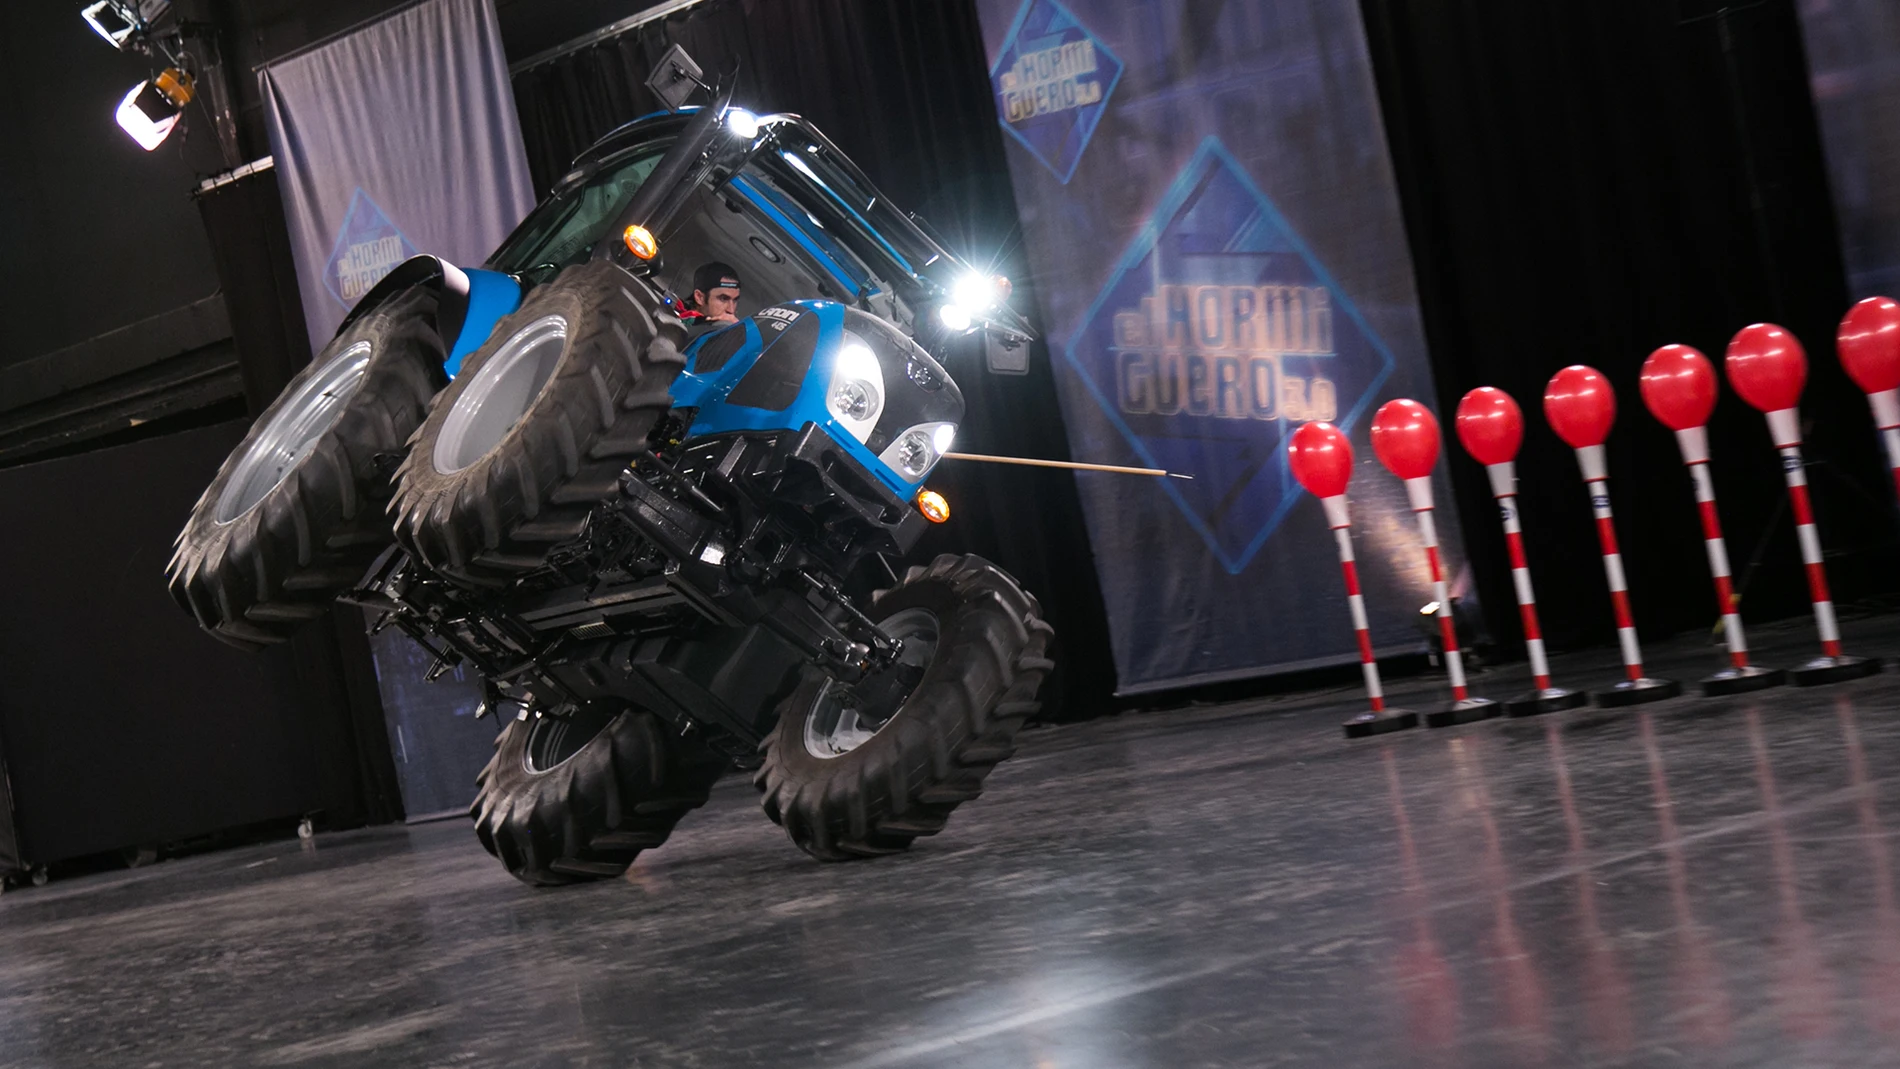 VÍDEO: Un nuevo reto de 'El Hormiguero 3.0': ¿Podrá explotar una hilera de globos sobre un tractor a dos ruedas?